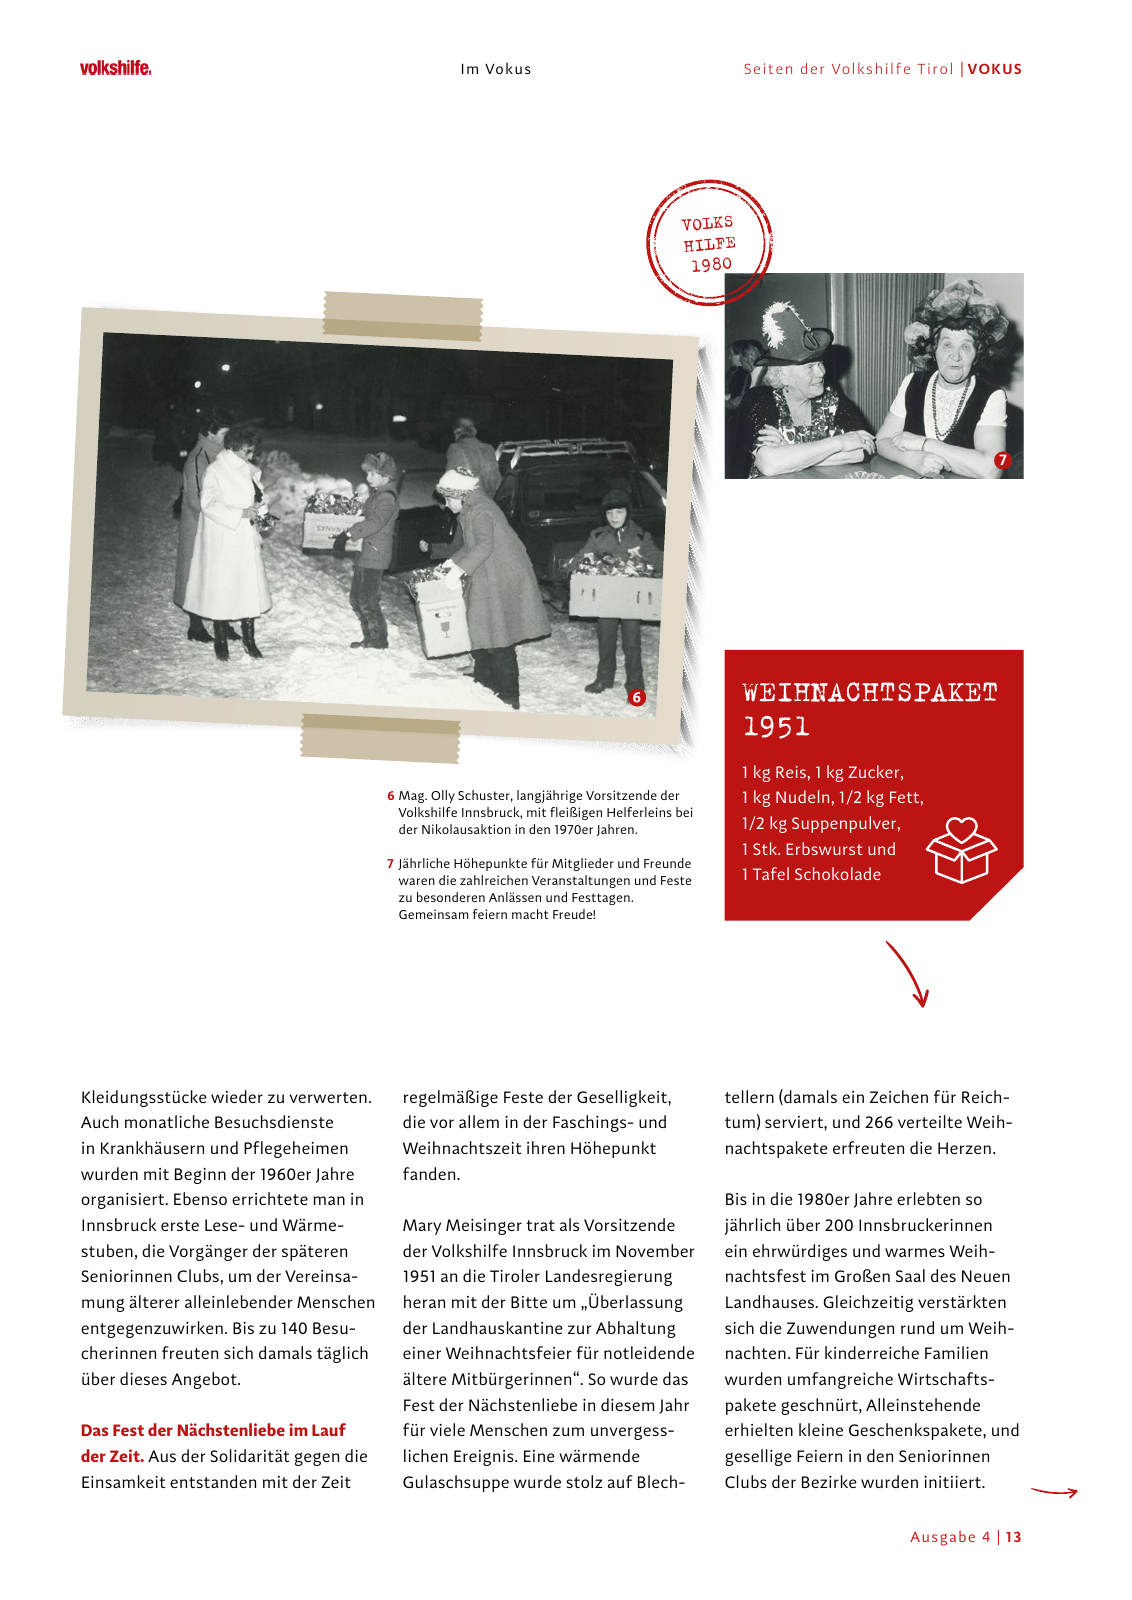 Vorschau Volkshilfe - VOKUS Mai 2022 | Ausgabe 4 Seite 13